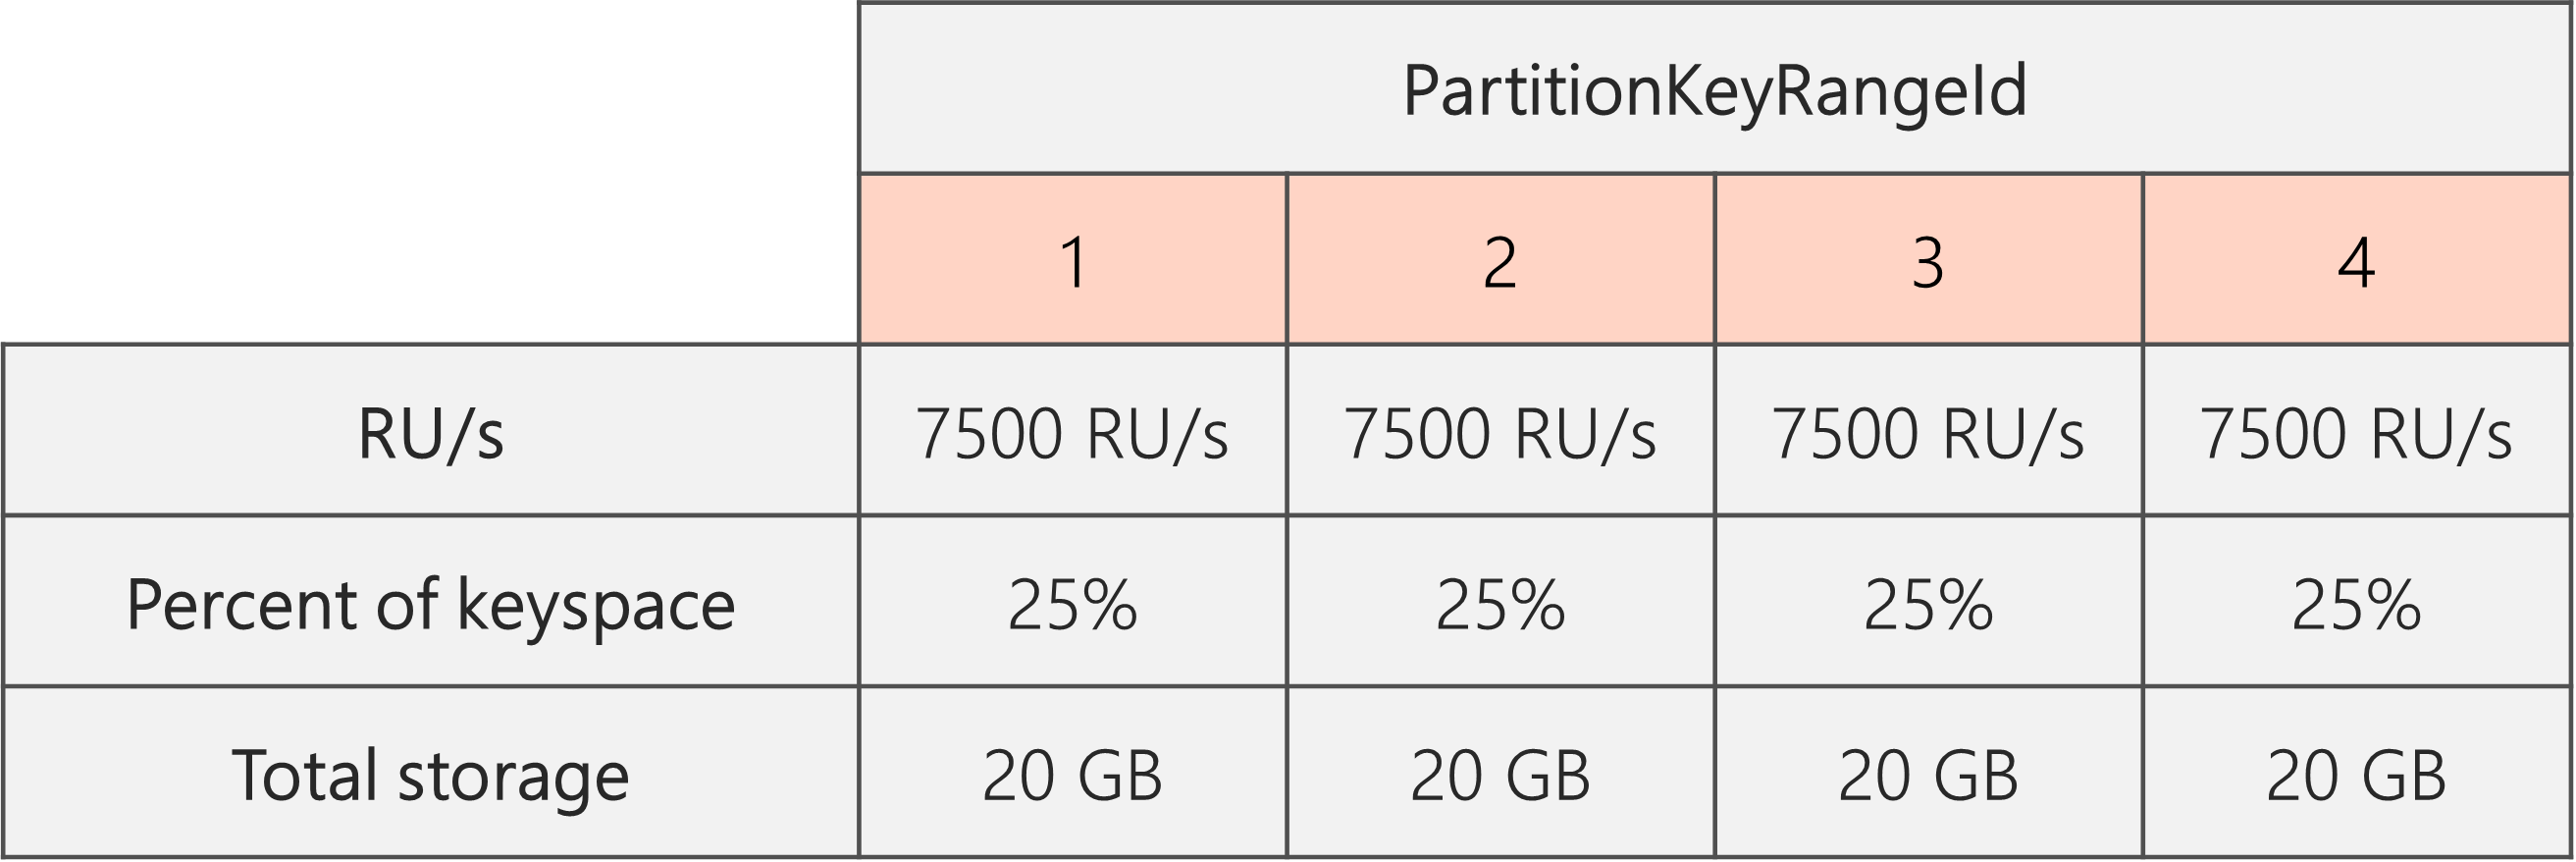 Após a conclusão da divisão e a redução das RU/s de 40.000 RU/s para 30.000 RU/s, há 4 PartitionKeyRangeIds, cada um com 7.500 RU/s e 25% do keyspace total (20 GB)